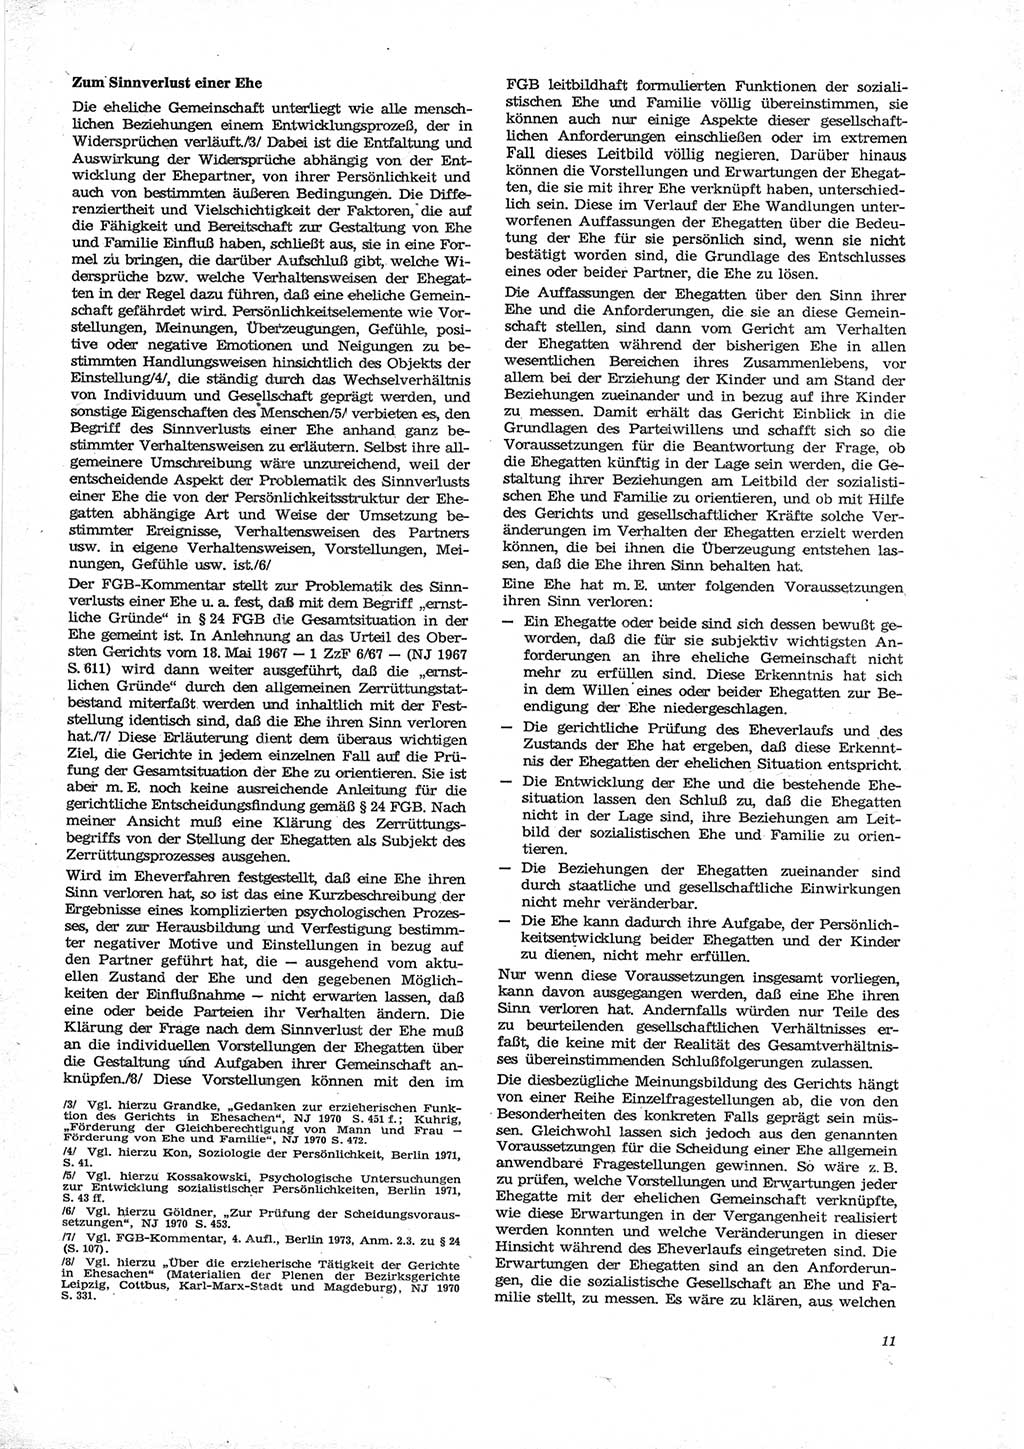 Neue Justiz (NJ), Zeitschrift für Recht und Rechtswissenschaft [Deutsche Demokratische Republik (DDR)], 28. Jahrgang 1974, Seite 11 (NJ DDR 1974, S. 11)